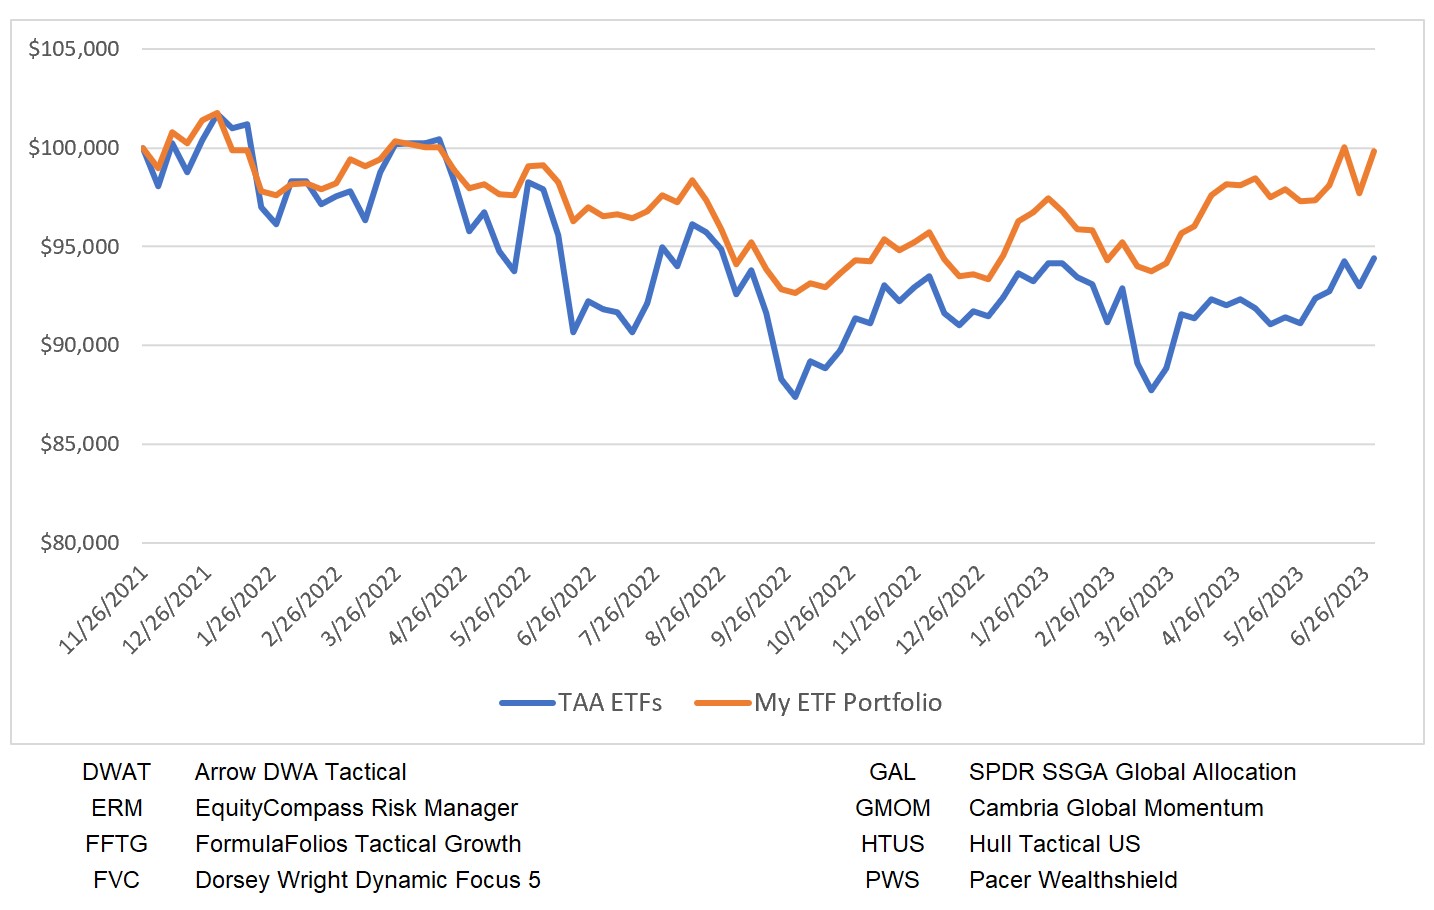 My ETF Portfolio vs TAA ETFs